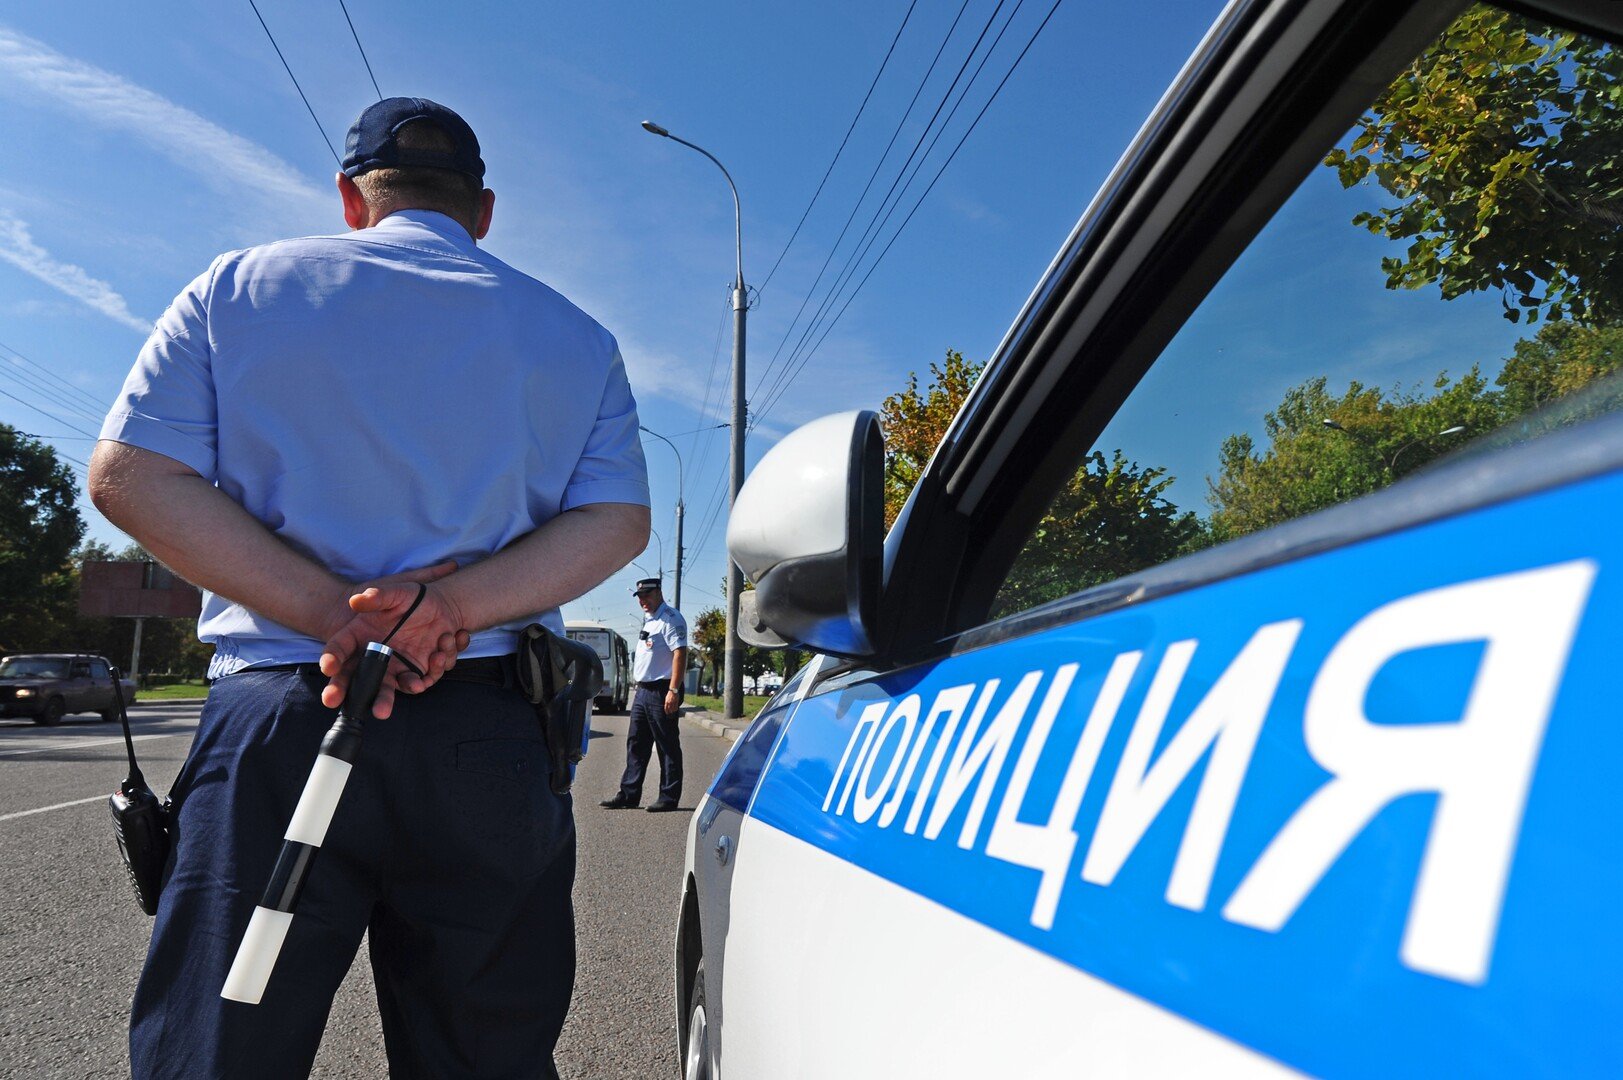 شرطة السير في تتارستان الروسية توقف سيارة ذاتية القيادة للتحقق من الرخصة